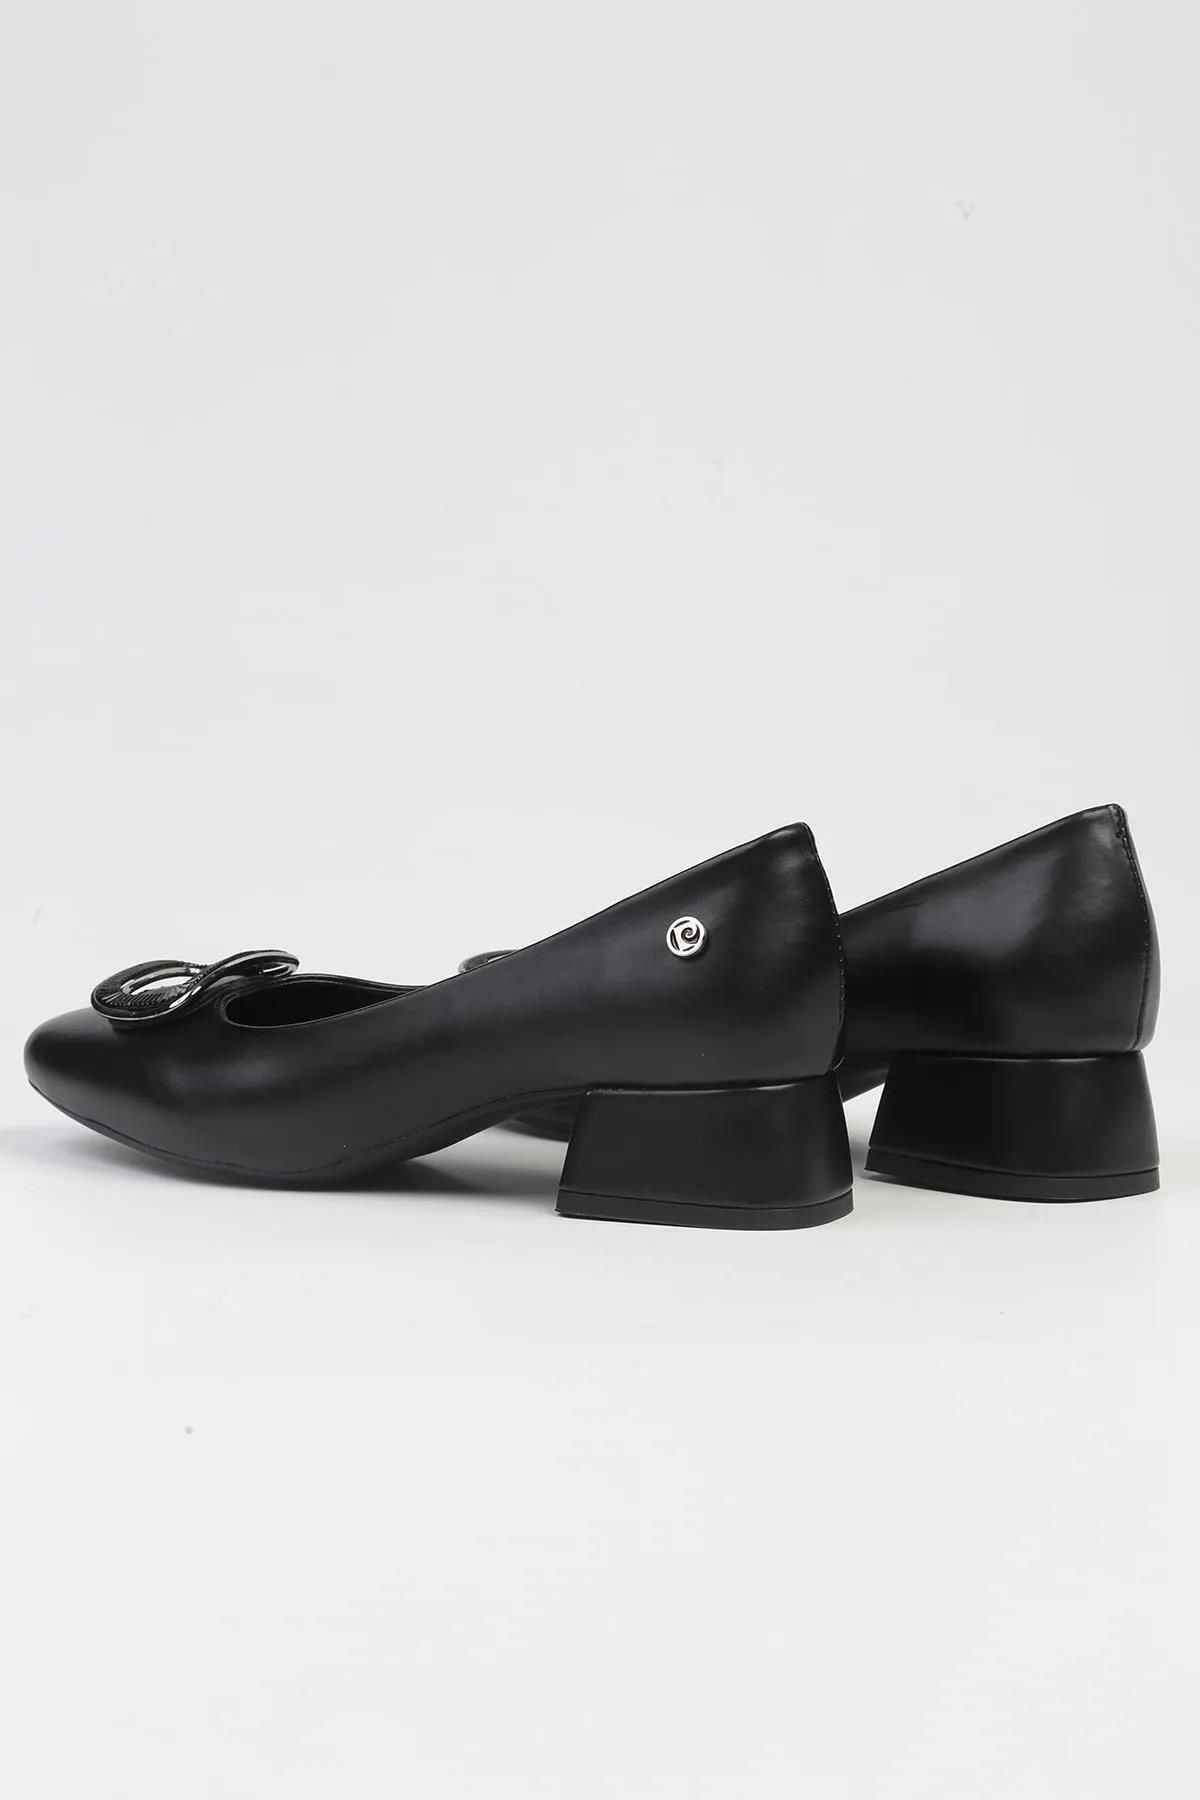 Pierre Cardin 53109 Kalın Kısa Topuk Toka Detaylı Kadın Topuklu Ayakkabı